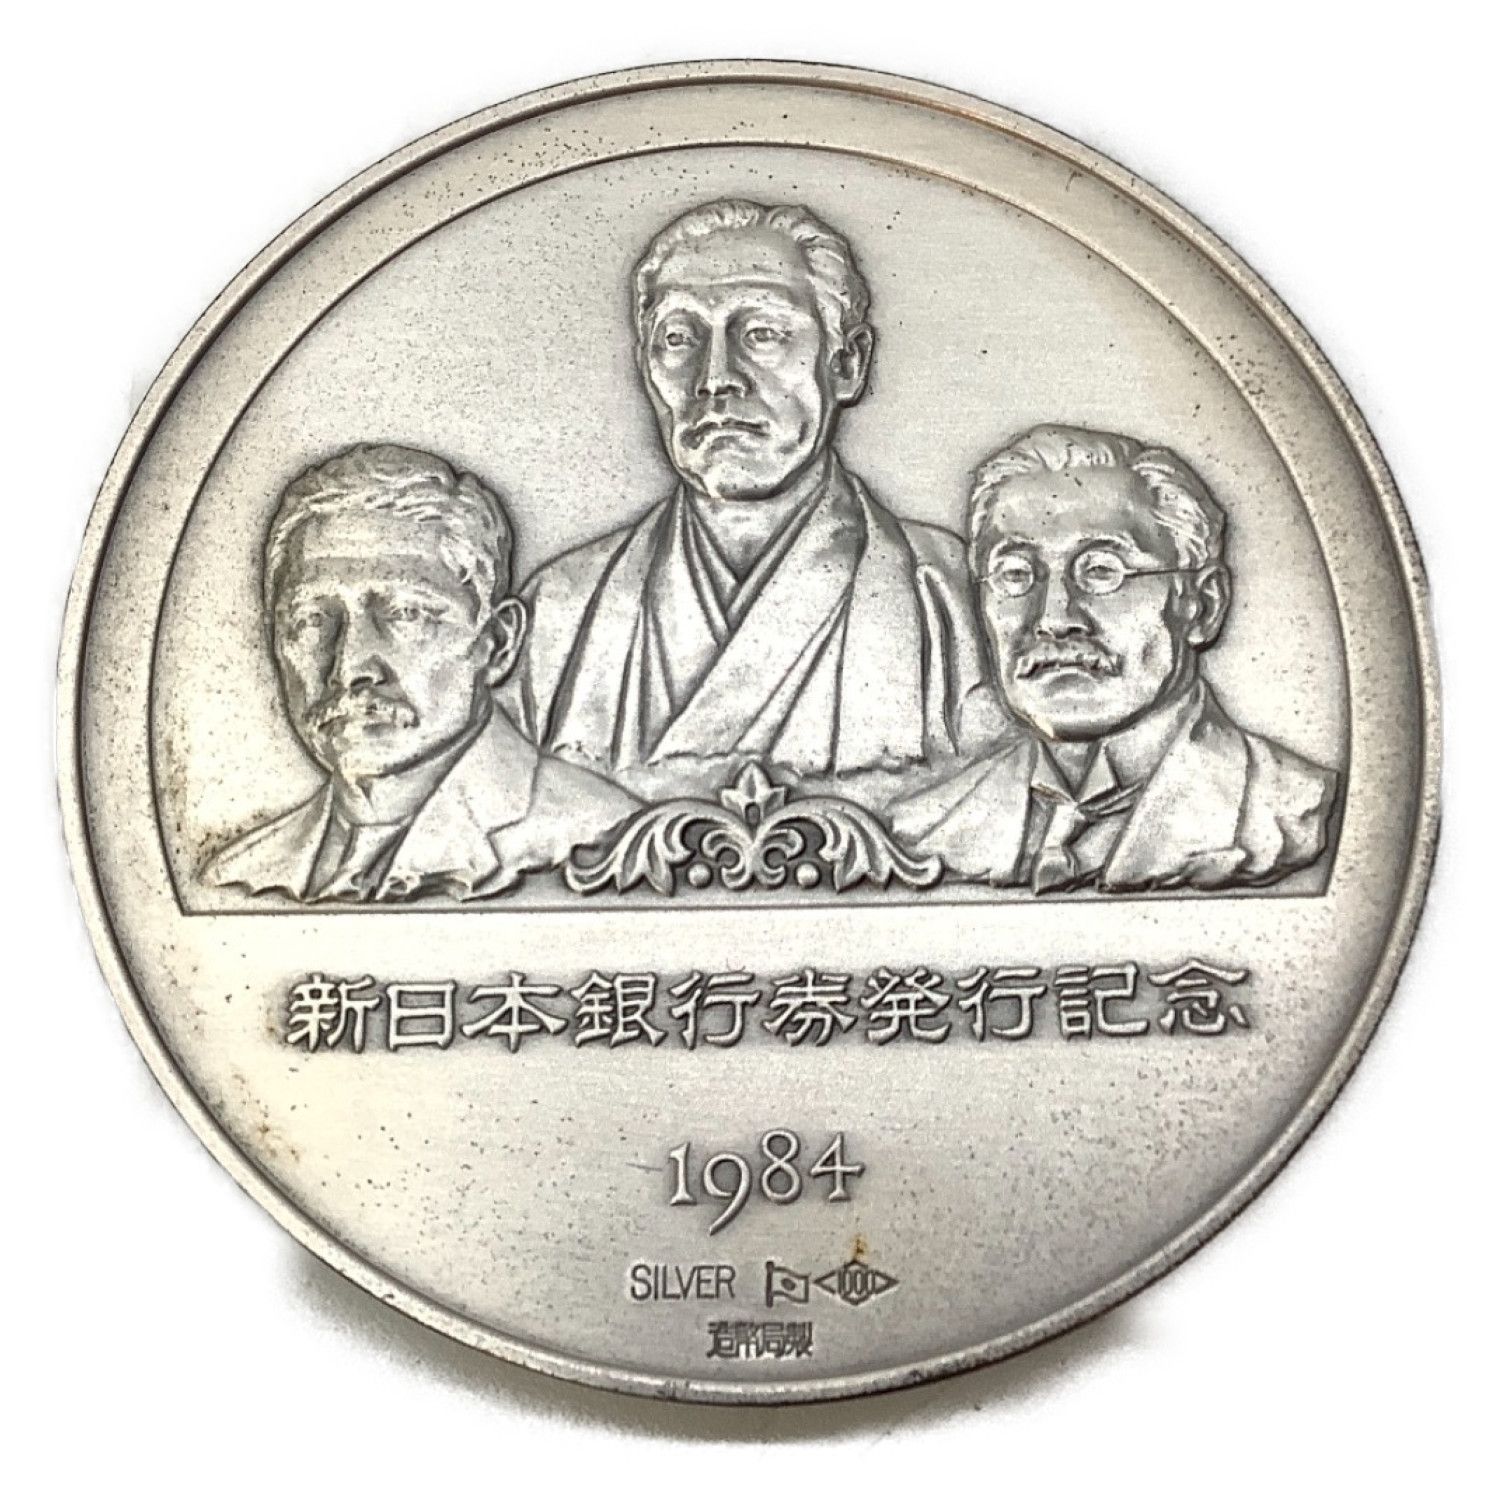 1984年発行新日本銀行券発行記念メダル - 旧貨幣